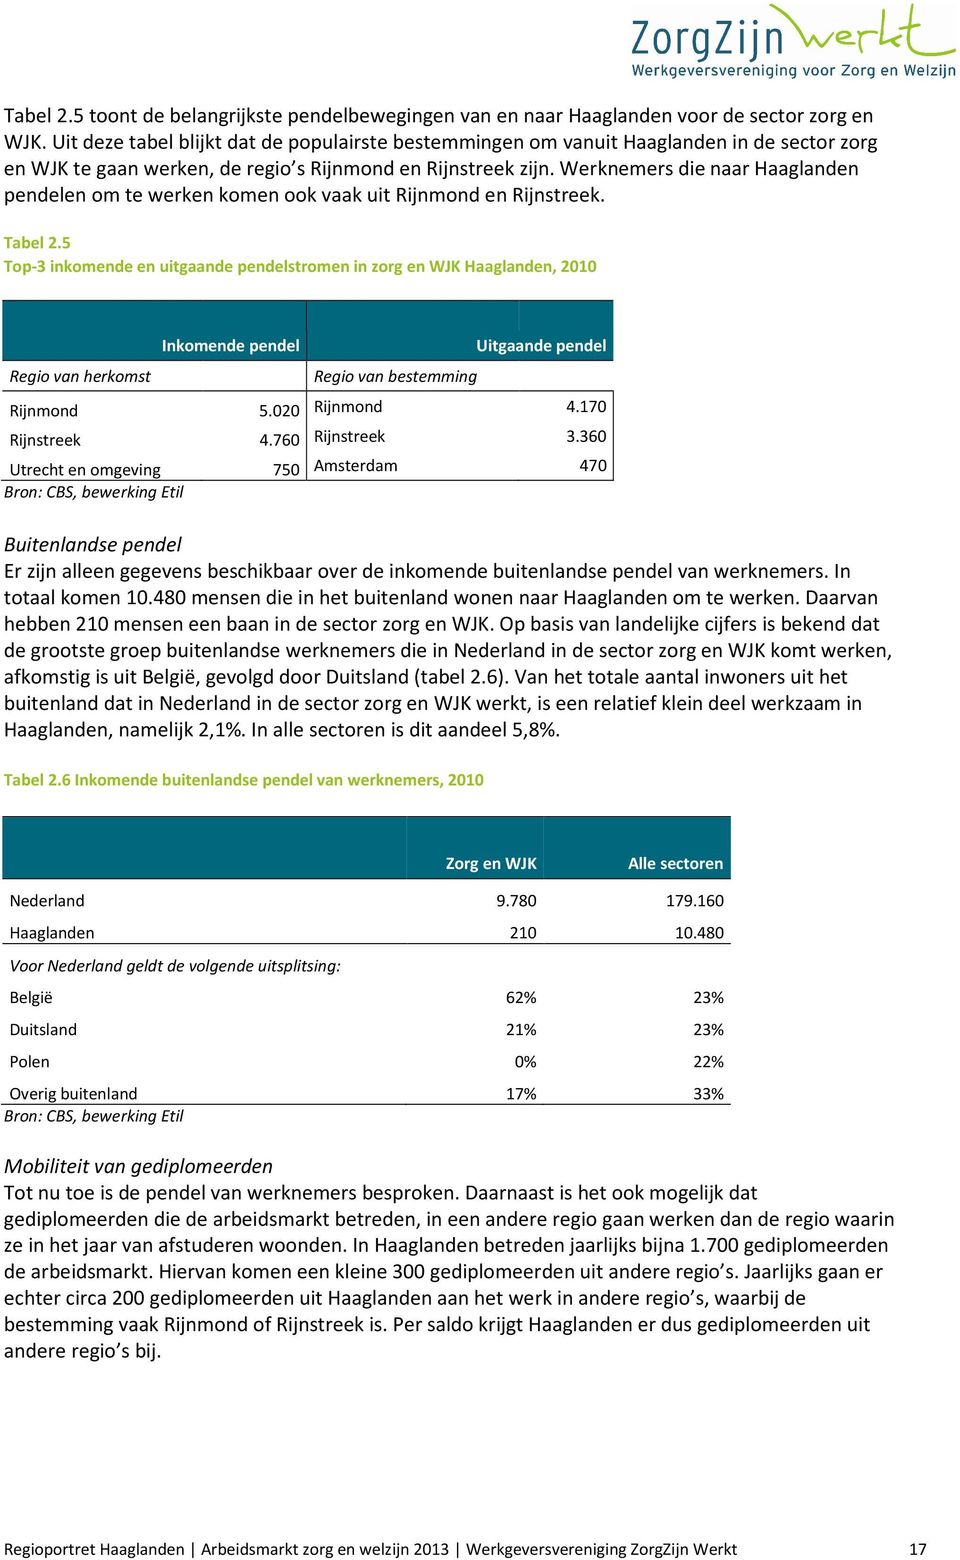 Werknemers die naar Haaglanden pendelen om te werken komen ook vaak uit Rijnmond en Rijnstreek. Tabel 2.